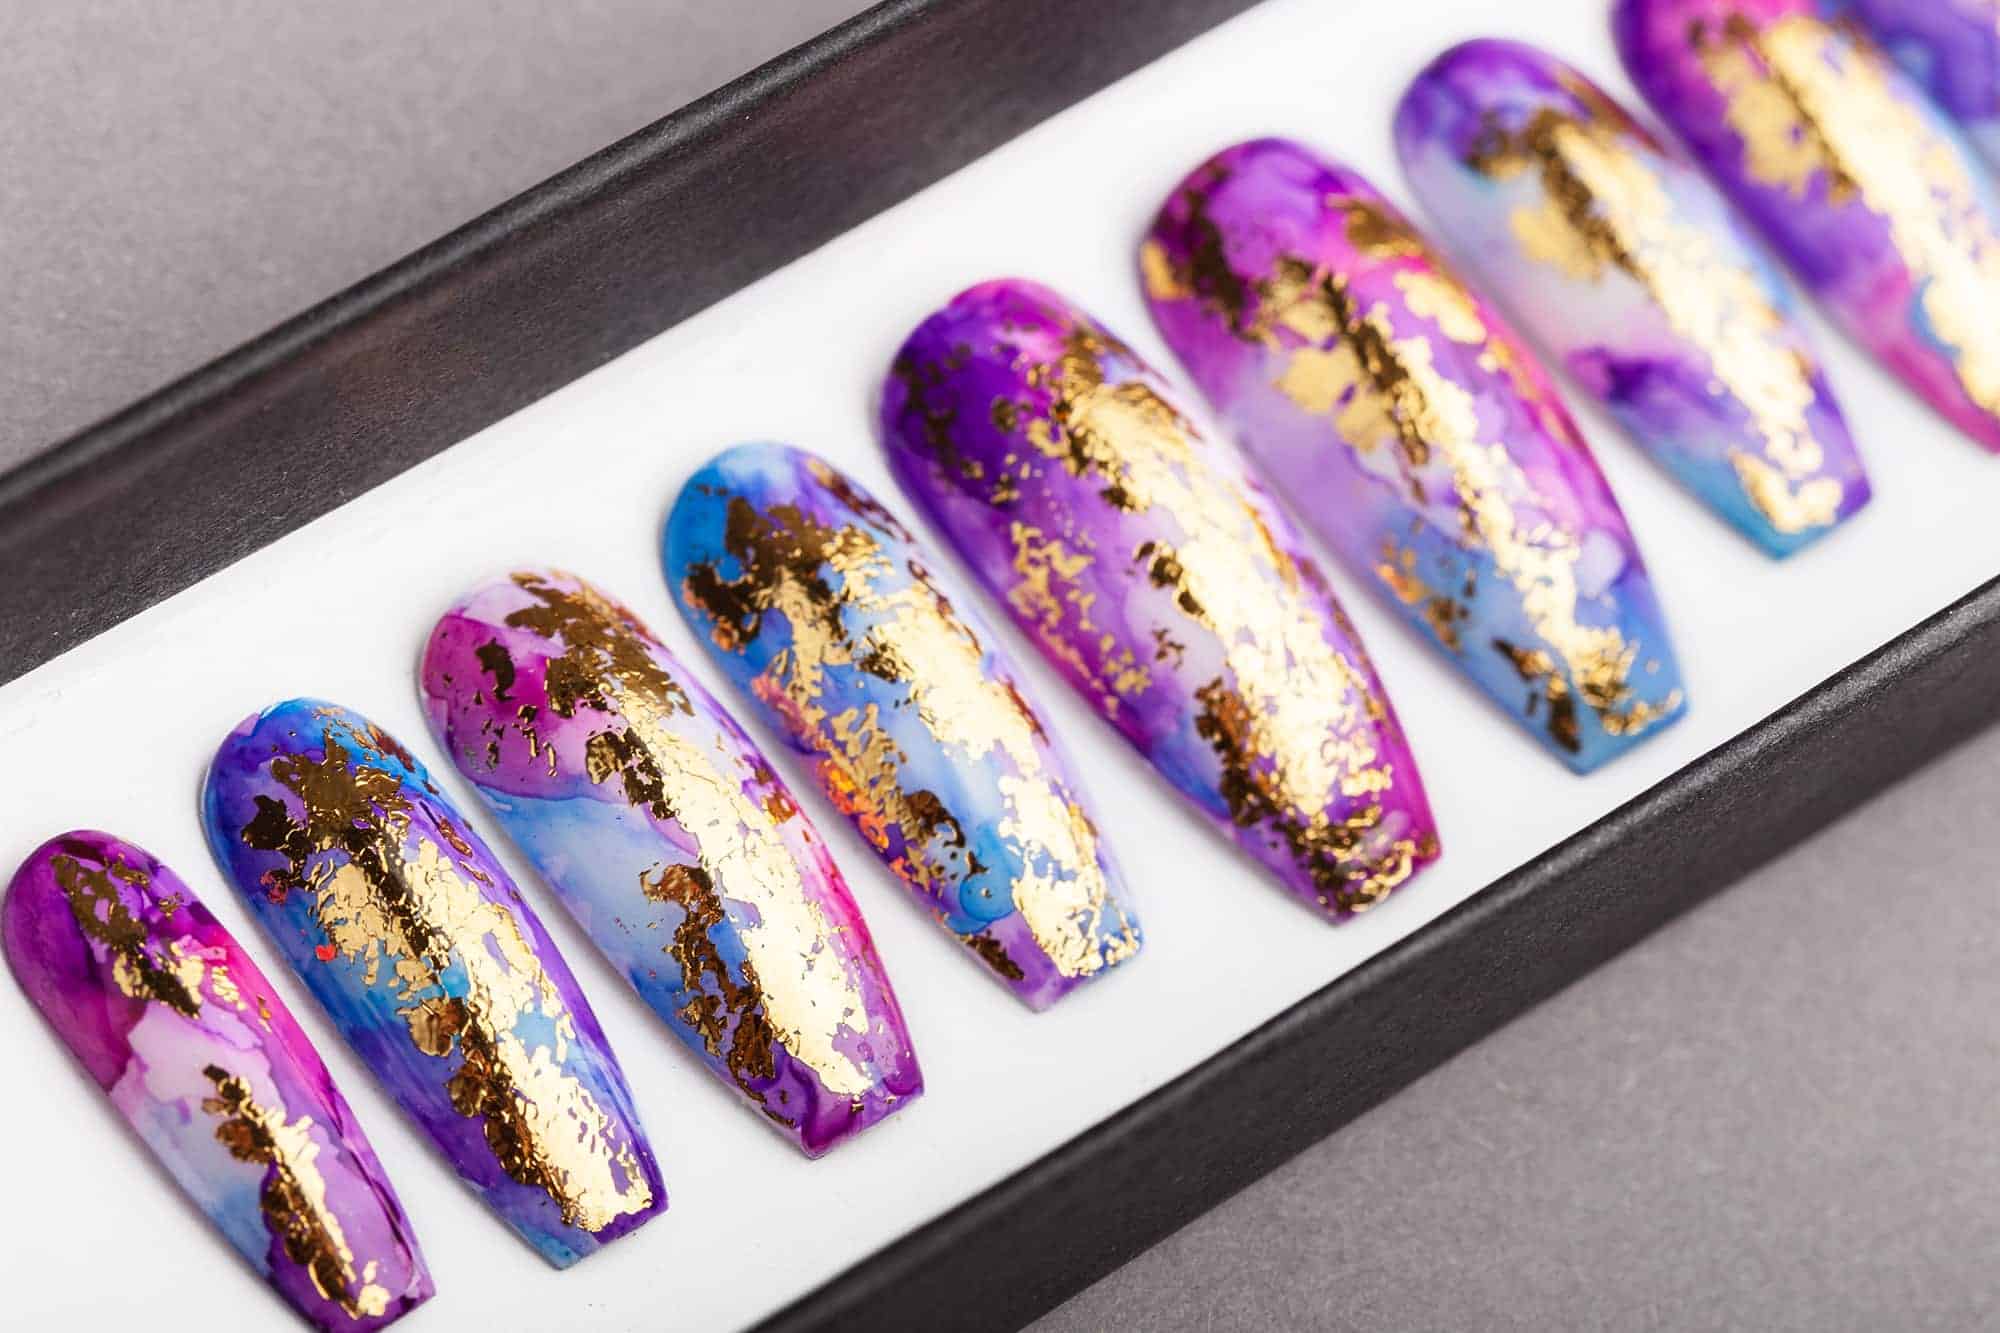 Golden Unicorn Press on Nails | Summer Nails | False Nails | Glue On Nails | Hand-painted Nail Art | Fake Nails